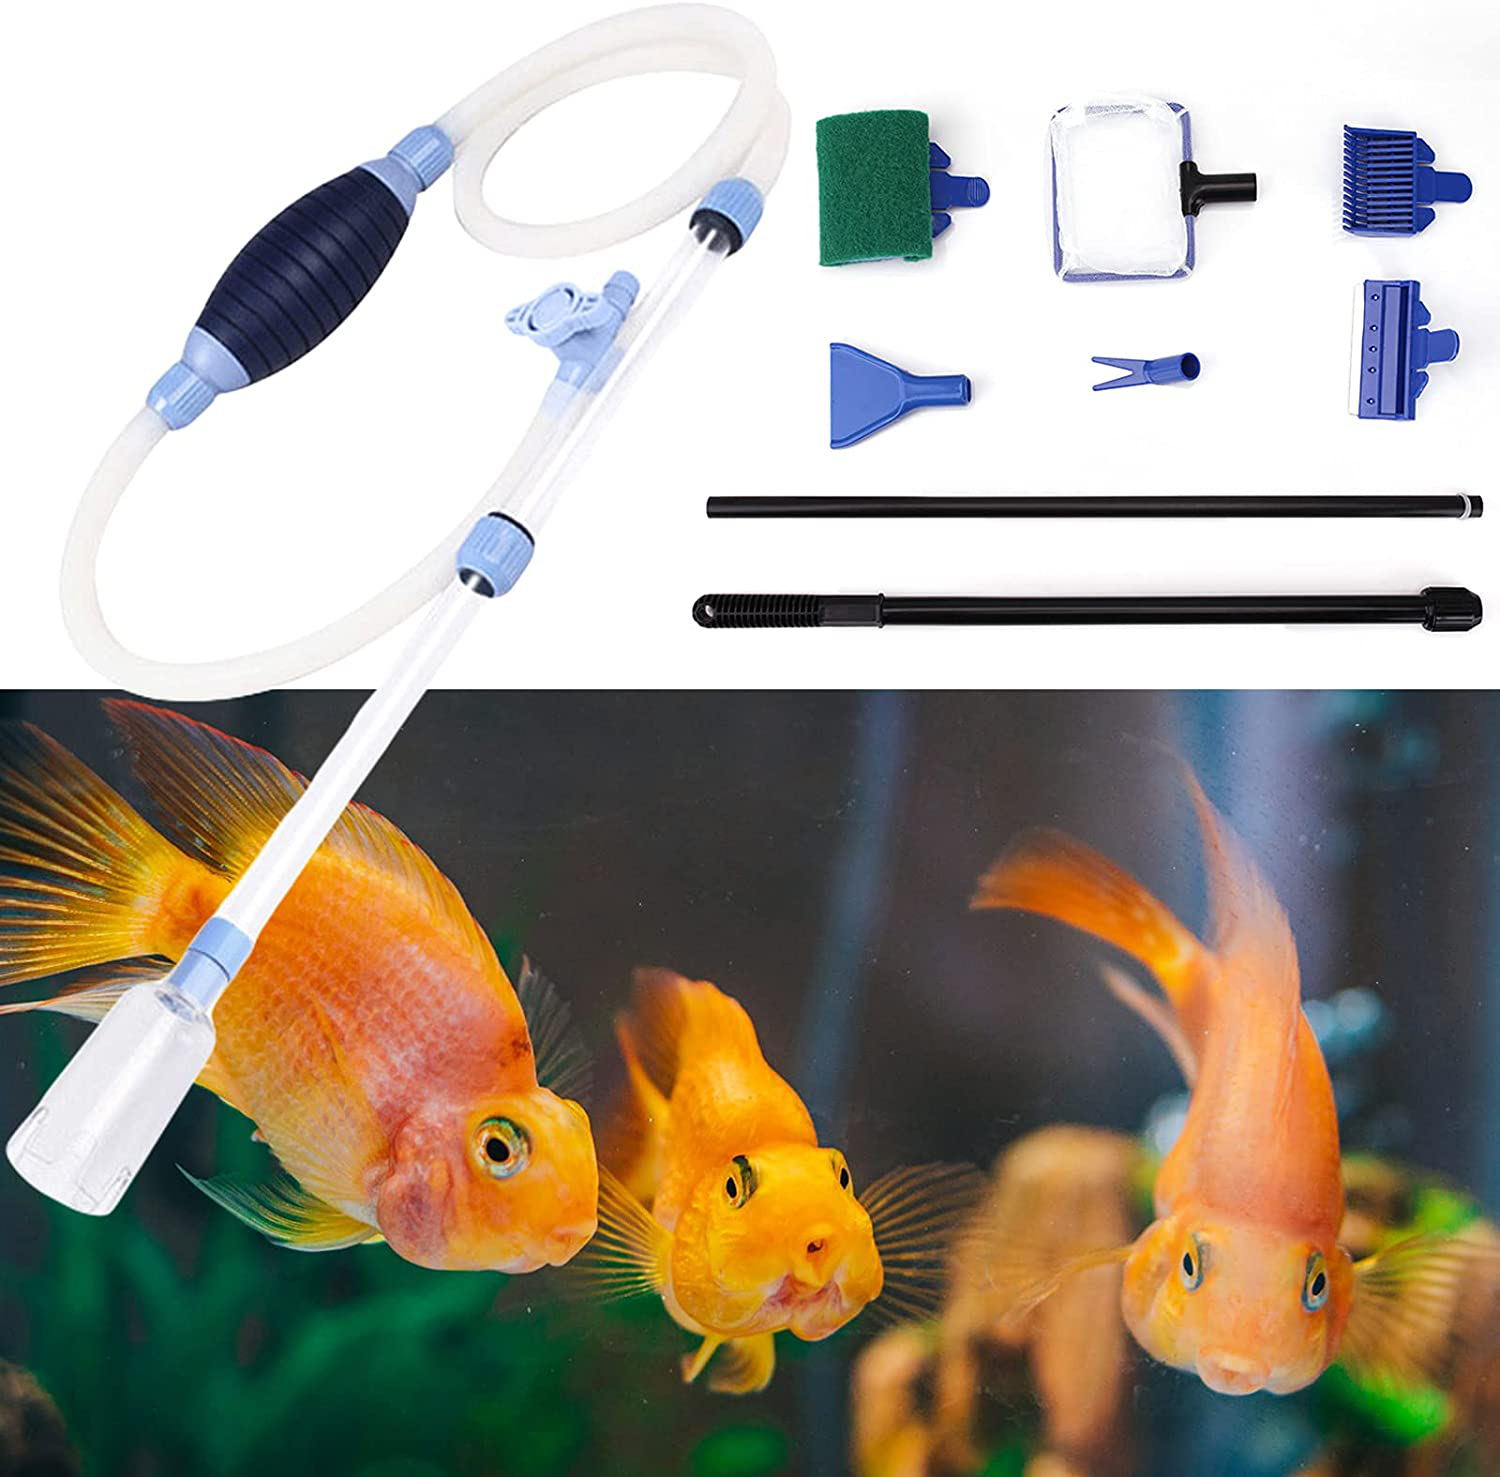 Fish Tank Cleaning Tools, 6-in-1 Aquarium Cleaning Tools, Adjustable Fish  Tank Cleaning Kit with Long Telescopic Handle, Multi-Function Aquarium